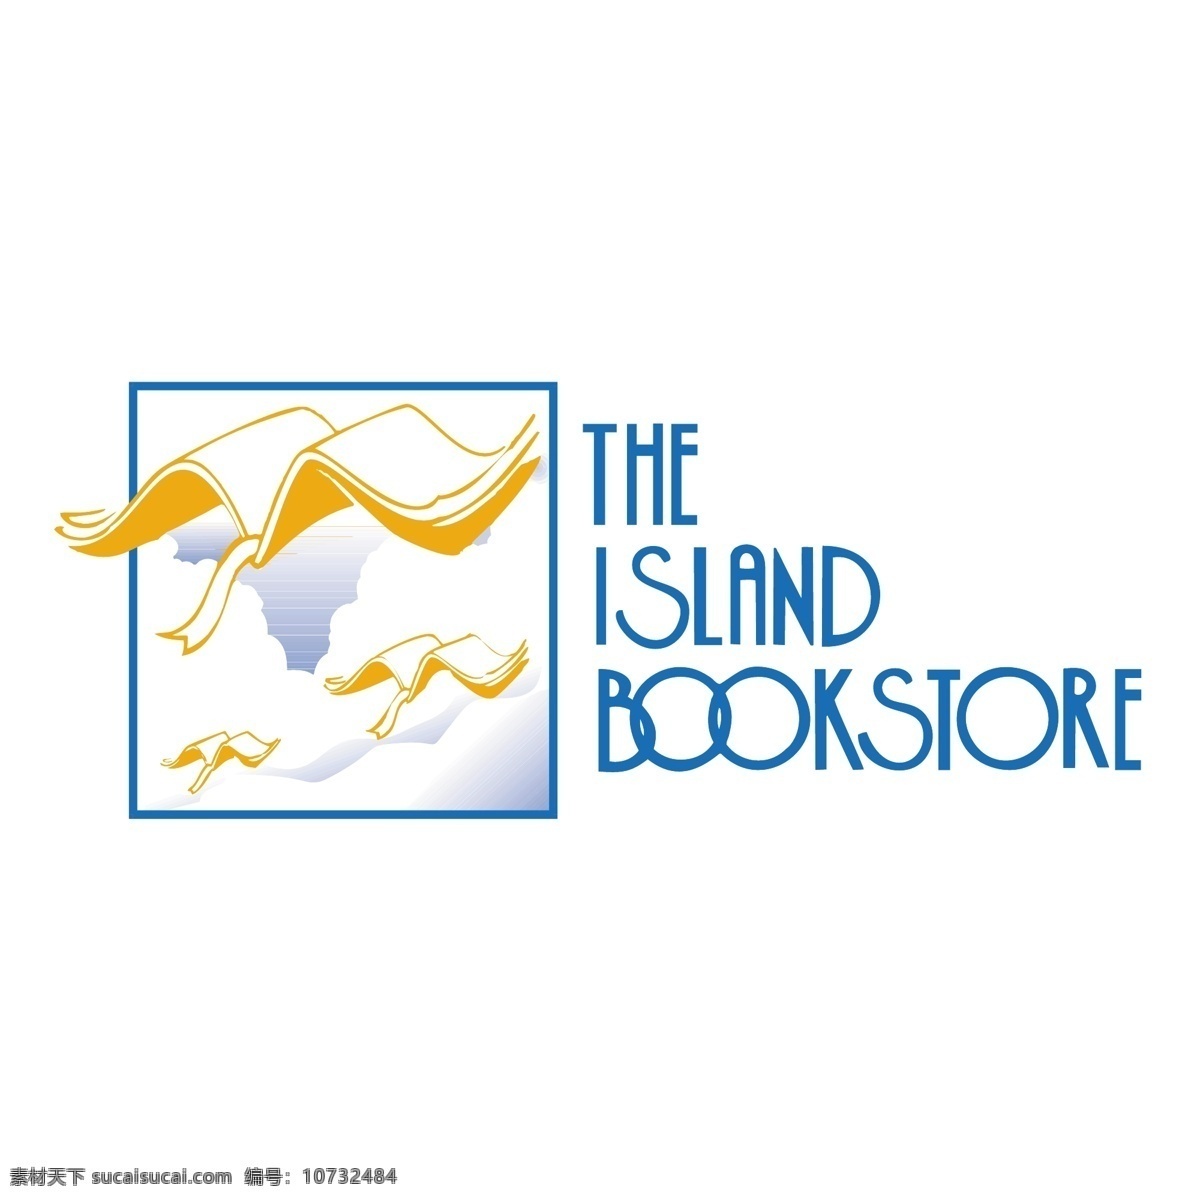 岛 岛上的书店 书店 自由岛岛 矢量图下载 小岛 岛的艺术自由 自由岛 岛的艺术下载 免费下载矢岛 岛上 向量 免费矢量岛 白色